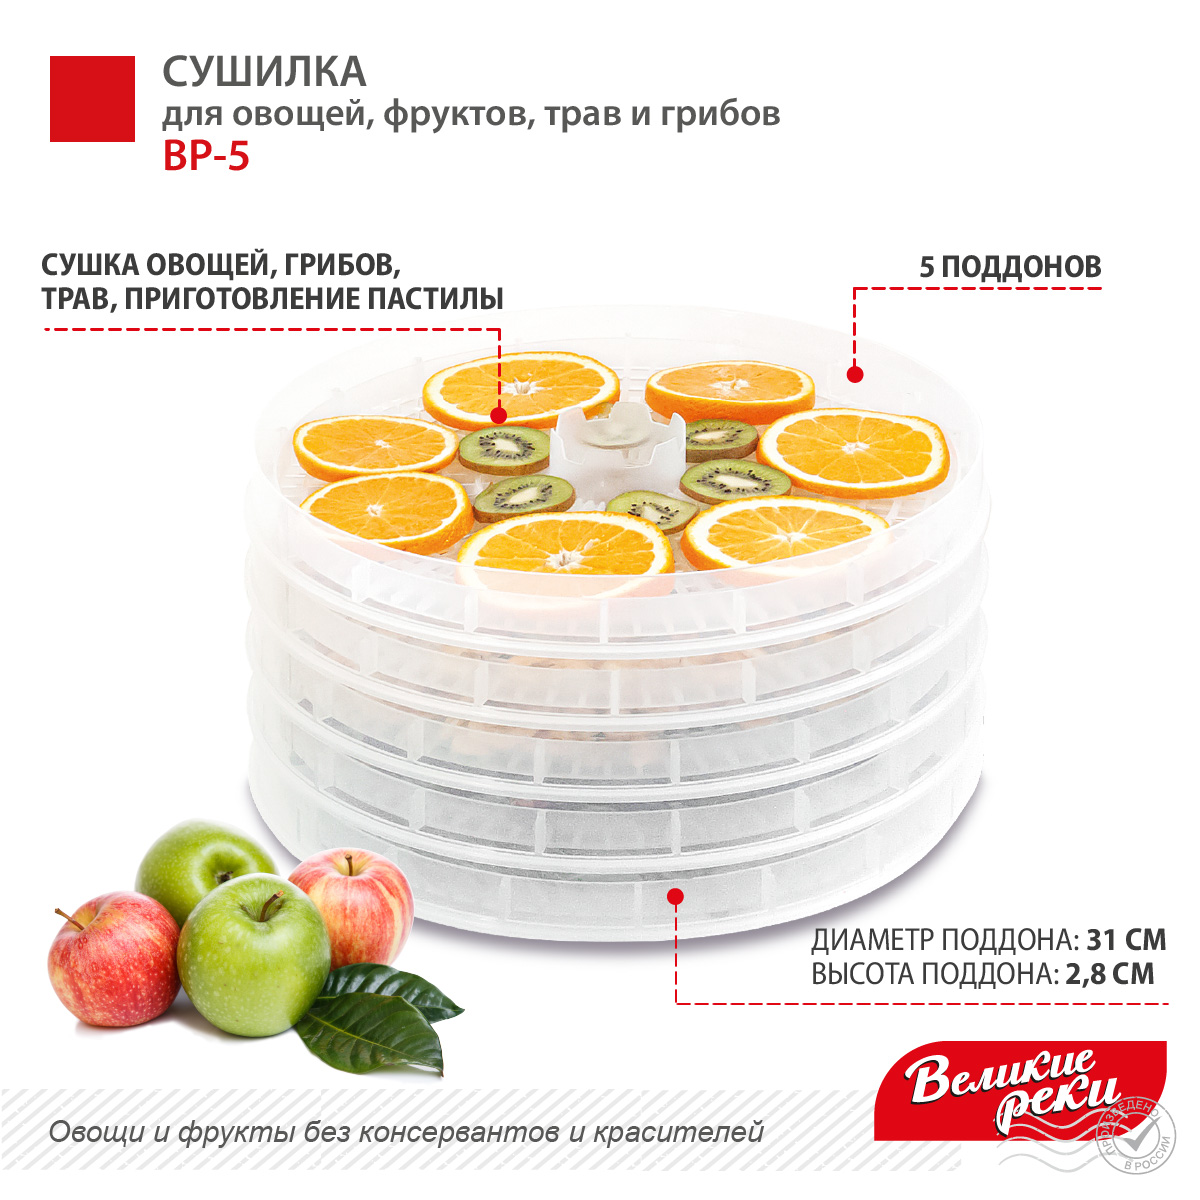 Сушилка для овощей и фруктов Великие Реки ВР-5 с прозрачными поддонами